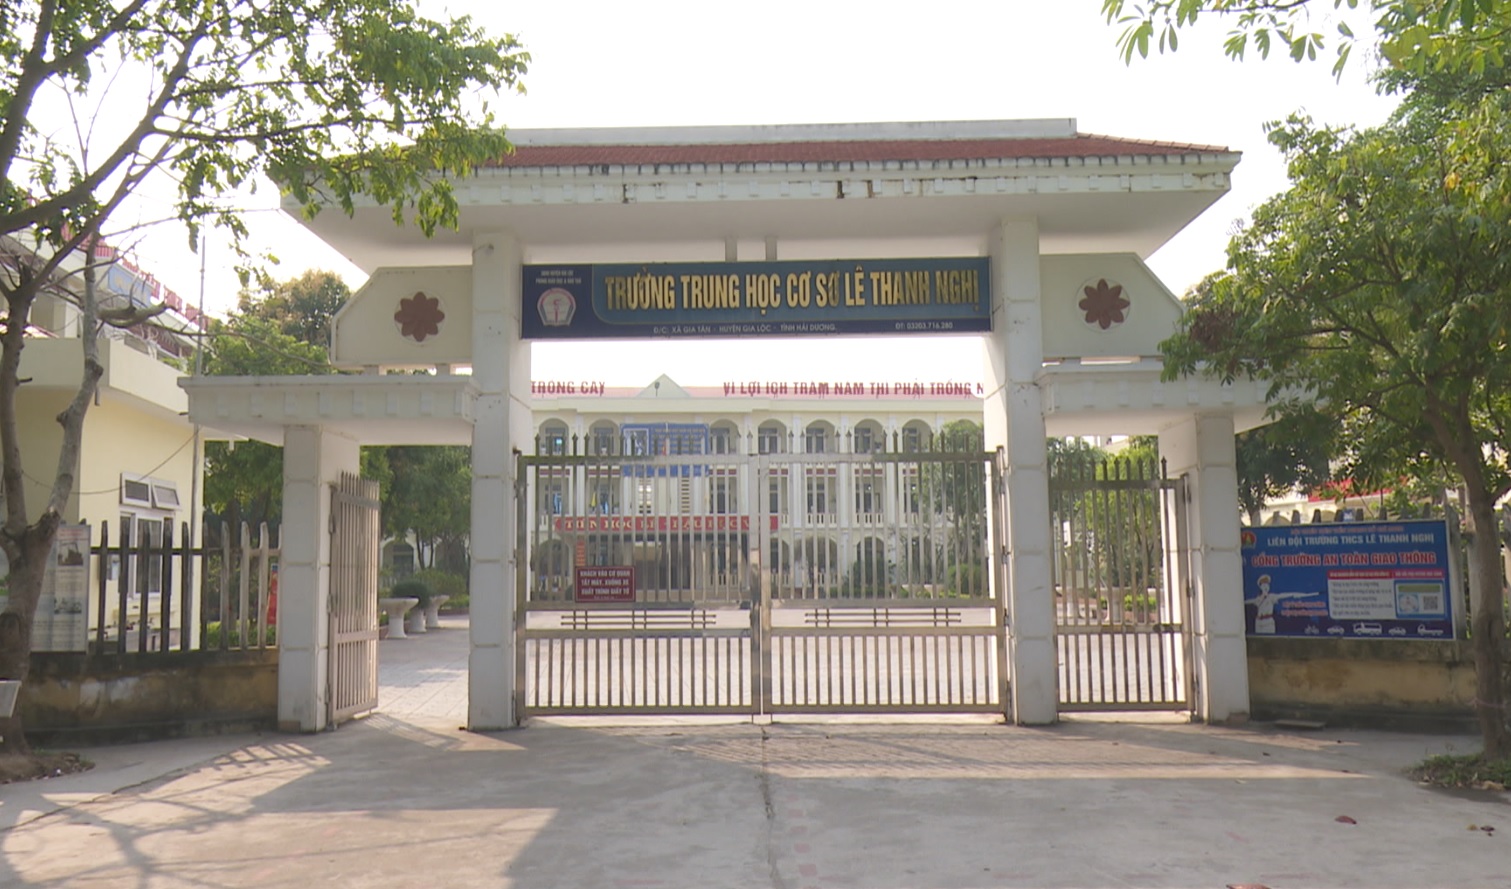 Tự hào ngôi trường mang tên Phó Chủ tịch Hội đồng nhà nước Lê Thanh Nghị